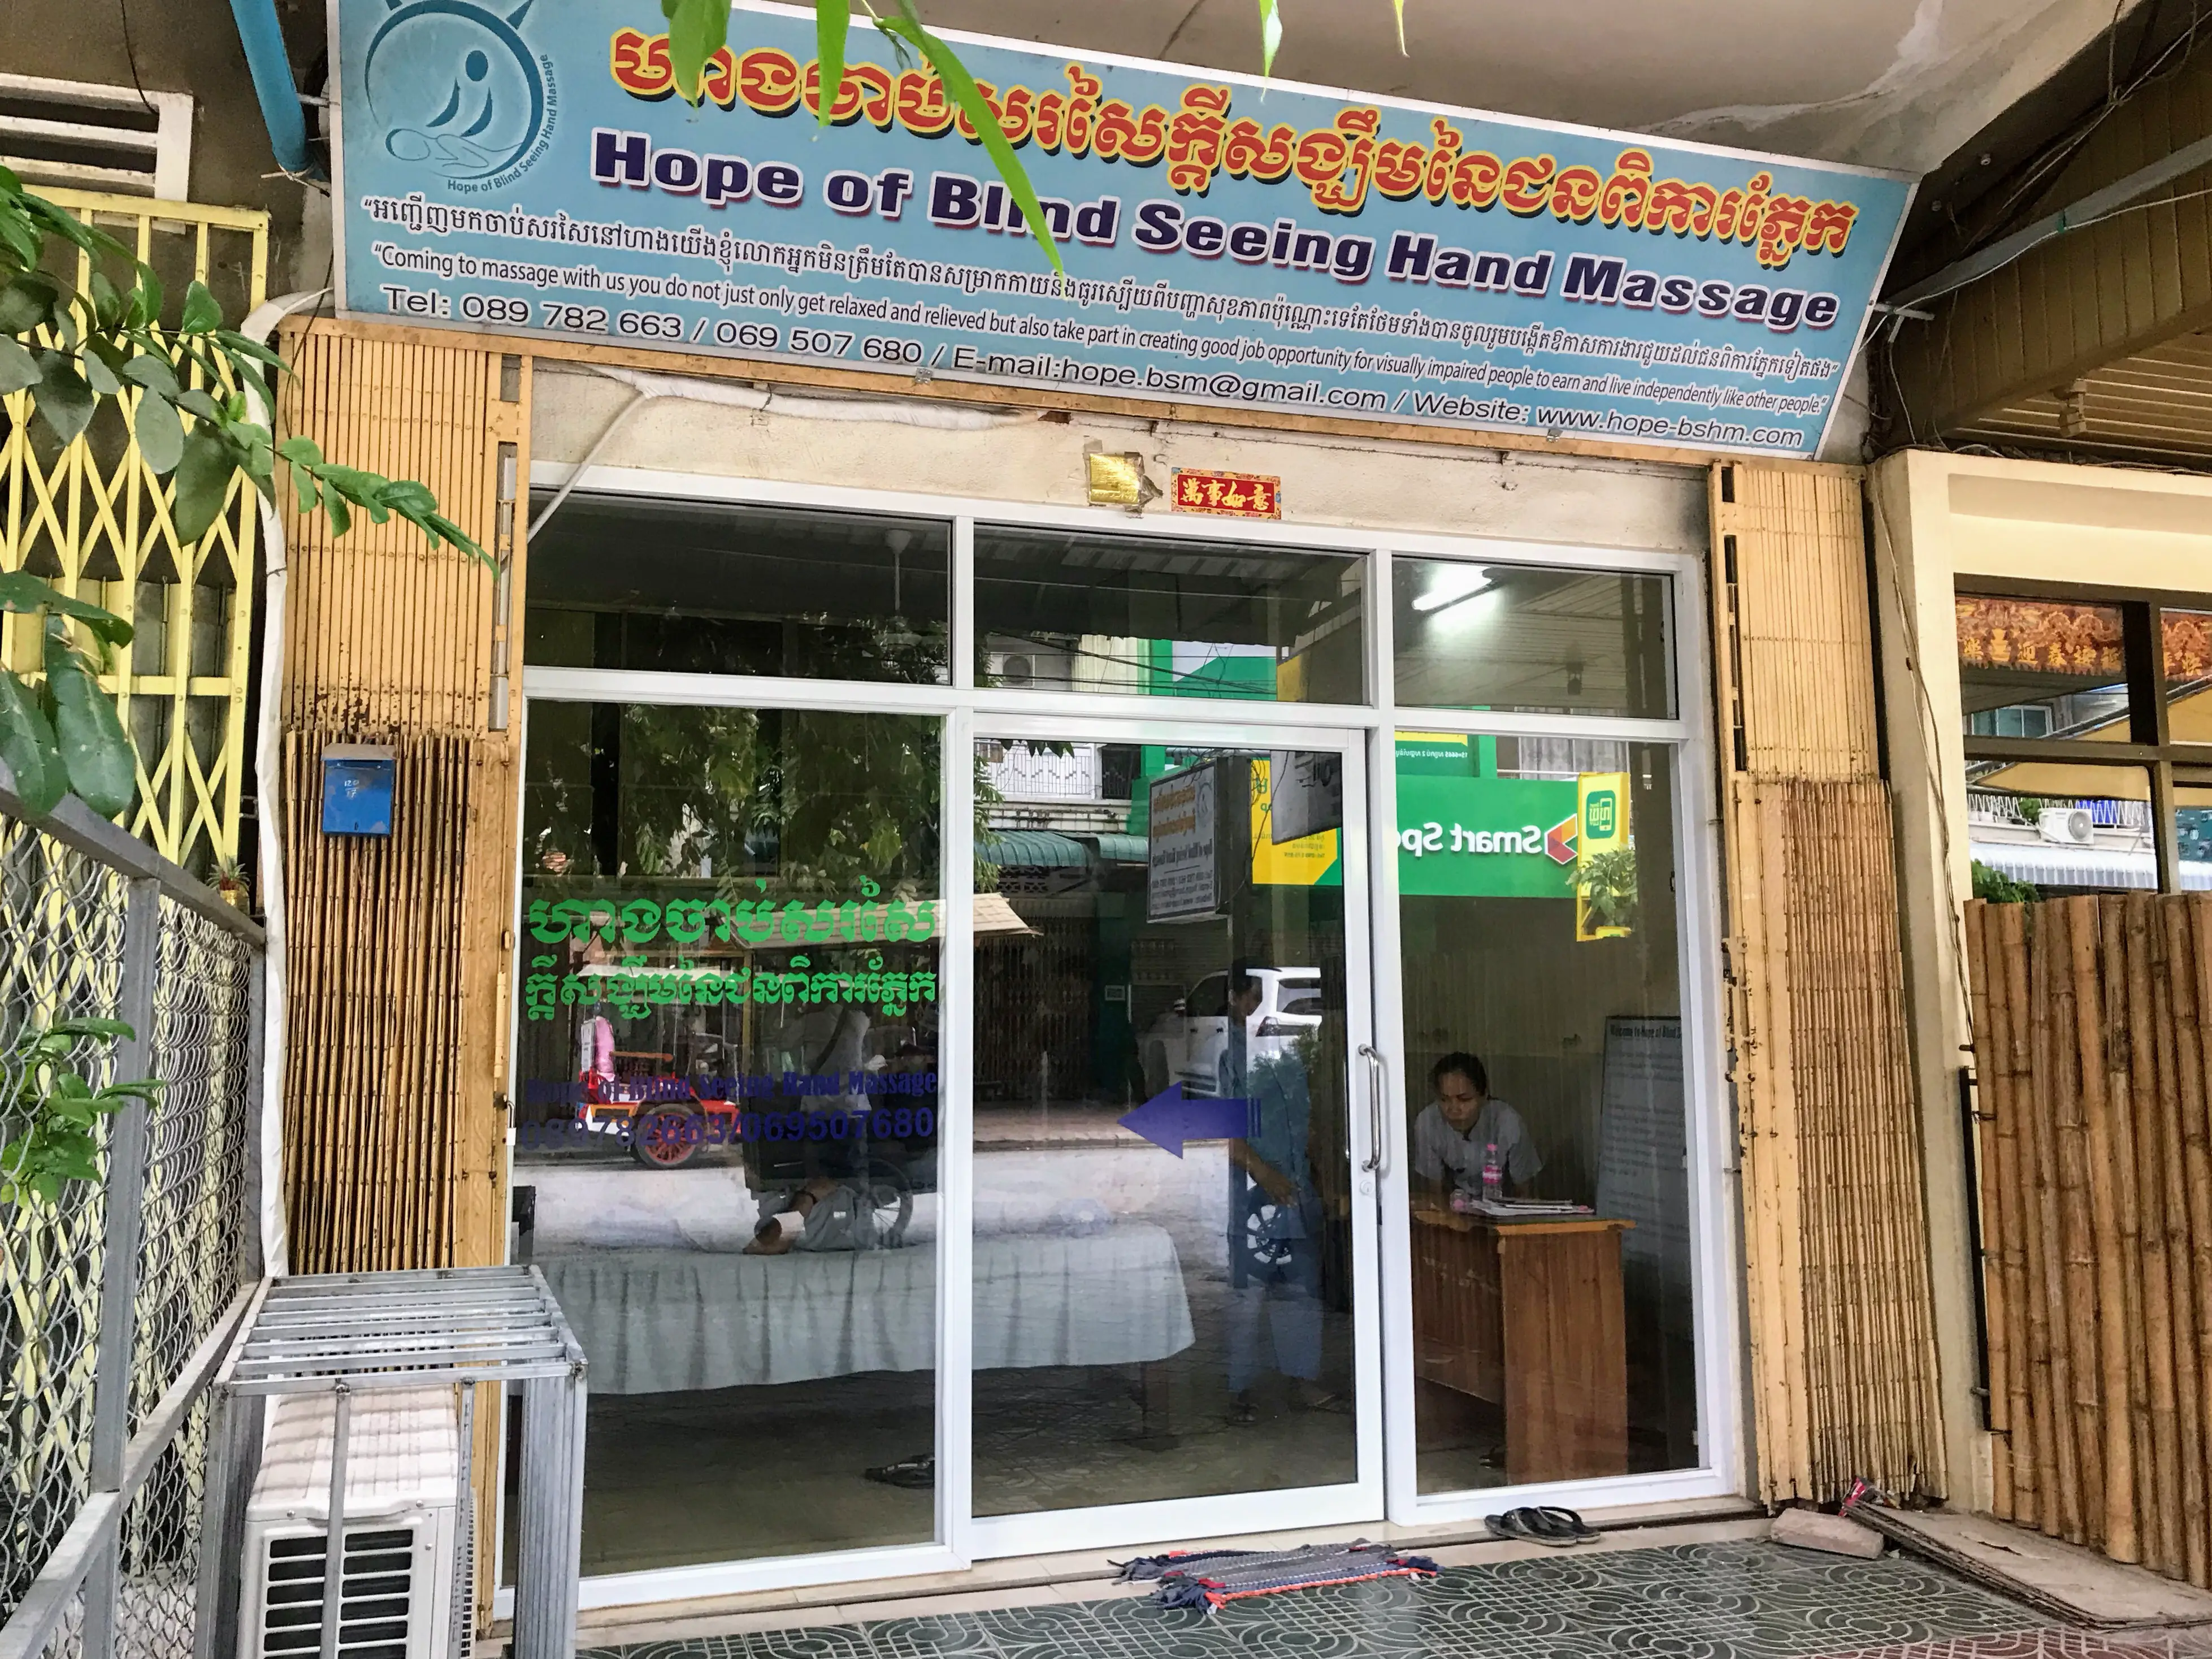 Hope of Seeing Hand Massage, Battambang, Cambodia 